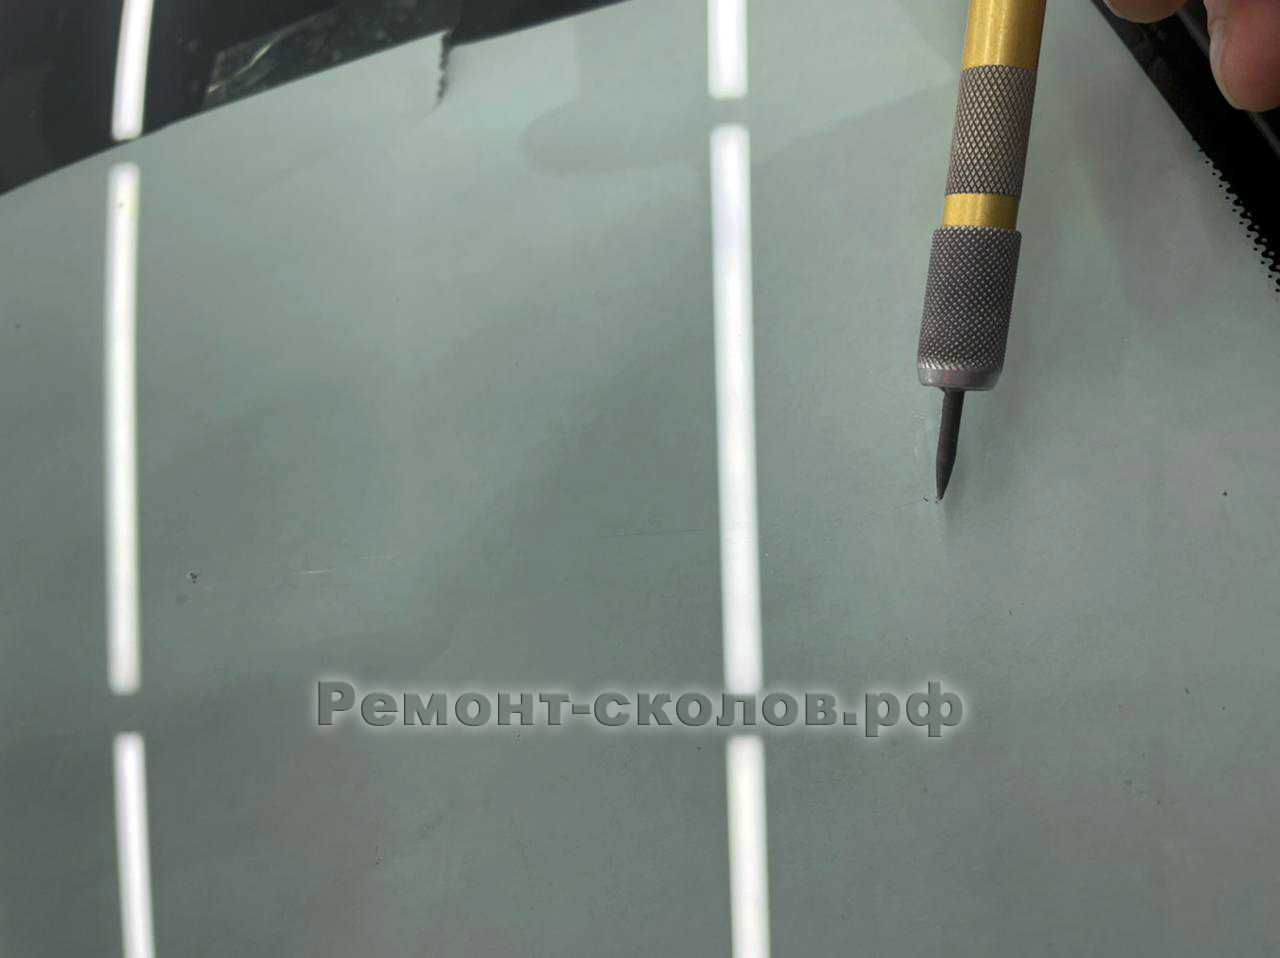 Mercedes ремонт сколов и трещины на лобовом стекле в ЮЗАО